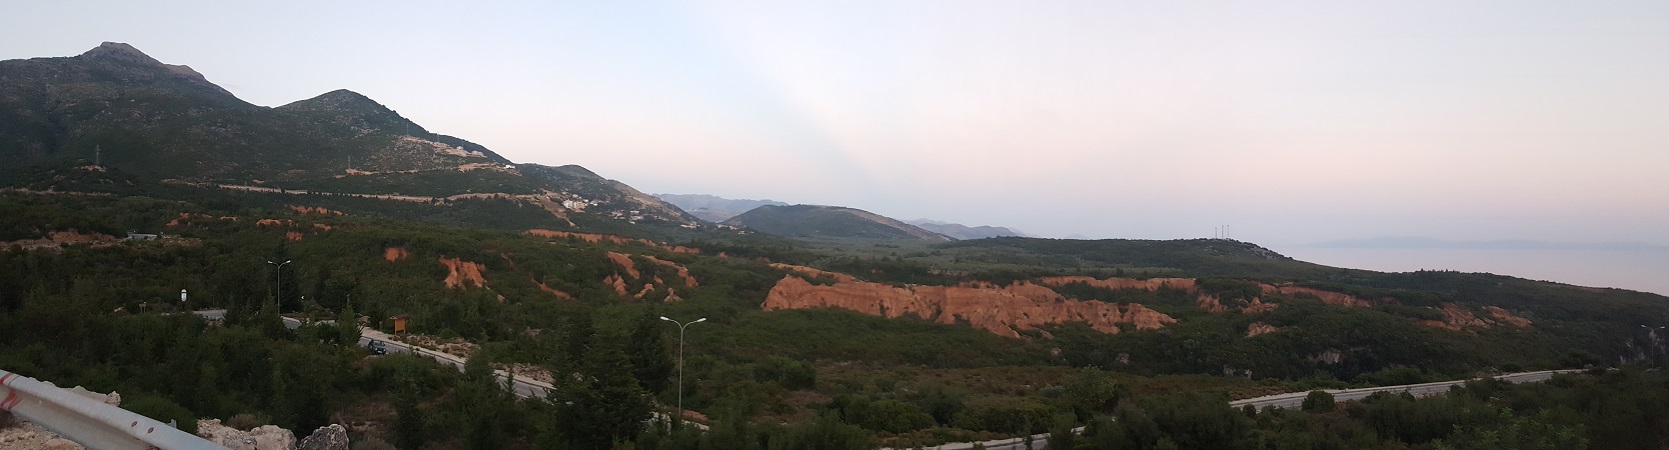 Canyon Vado in Albania